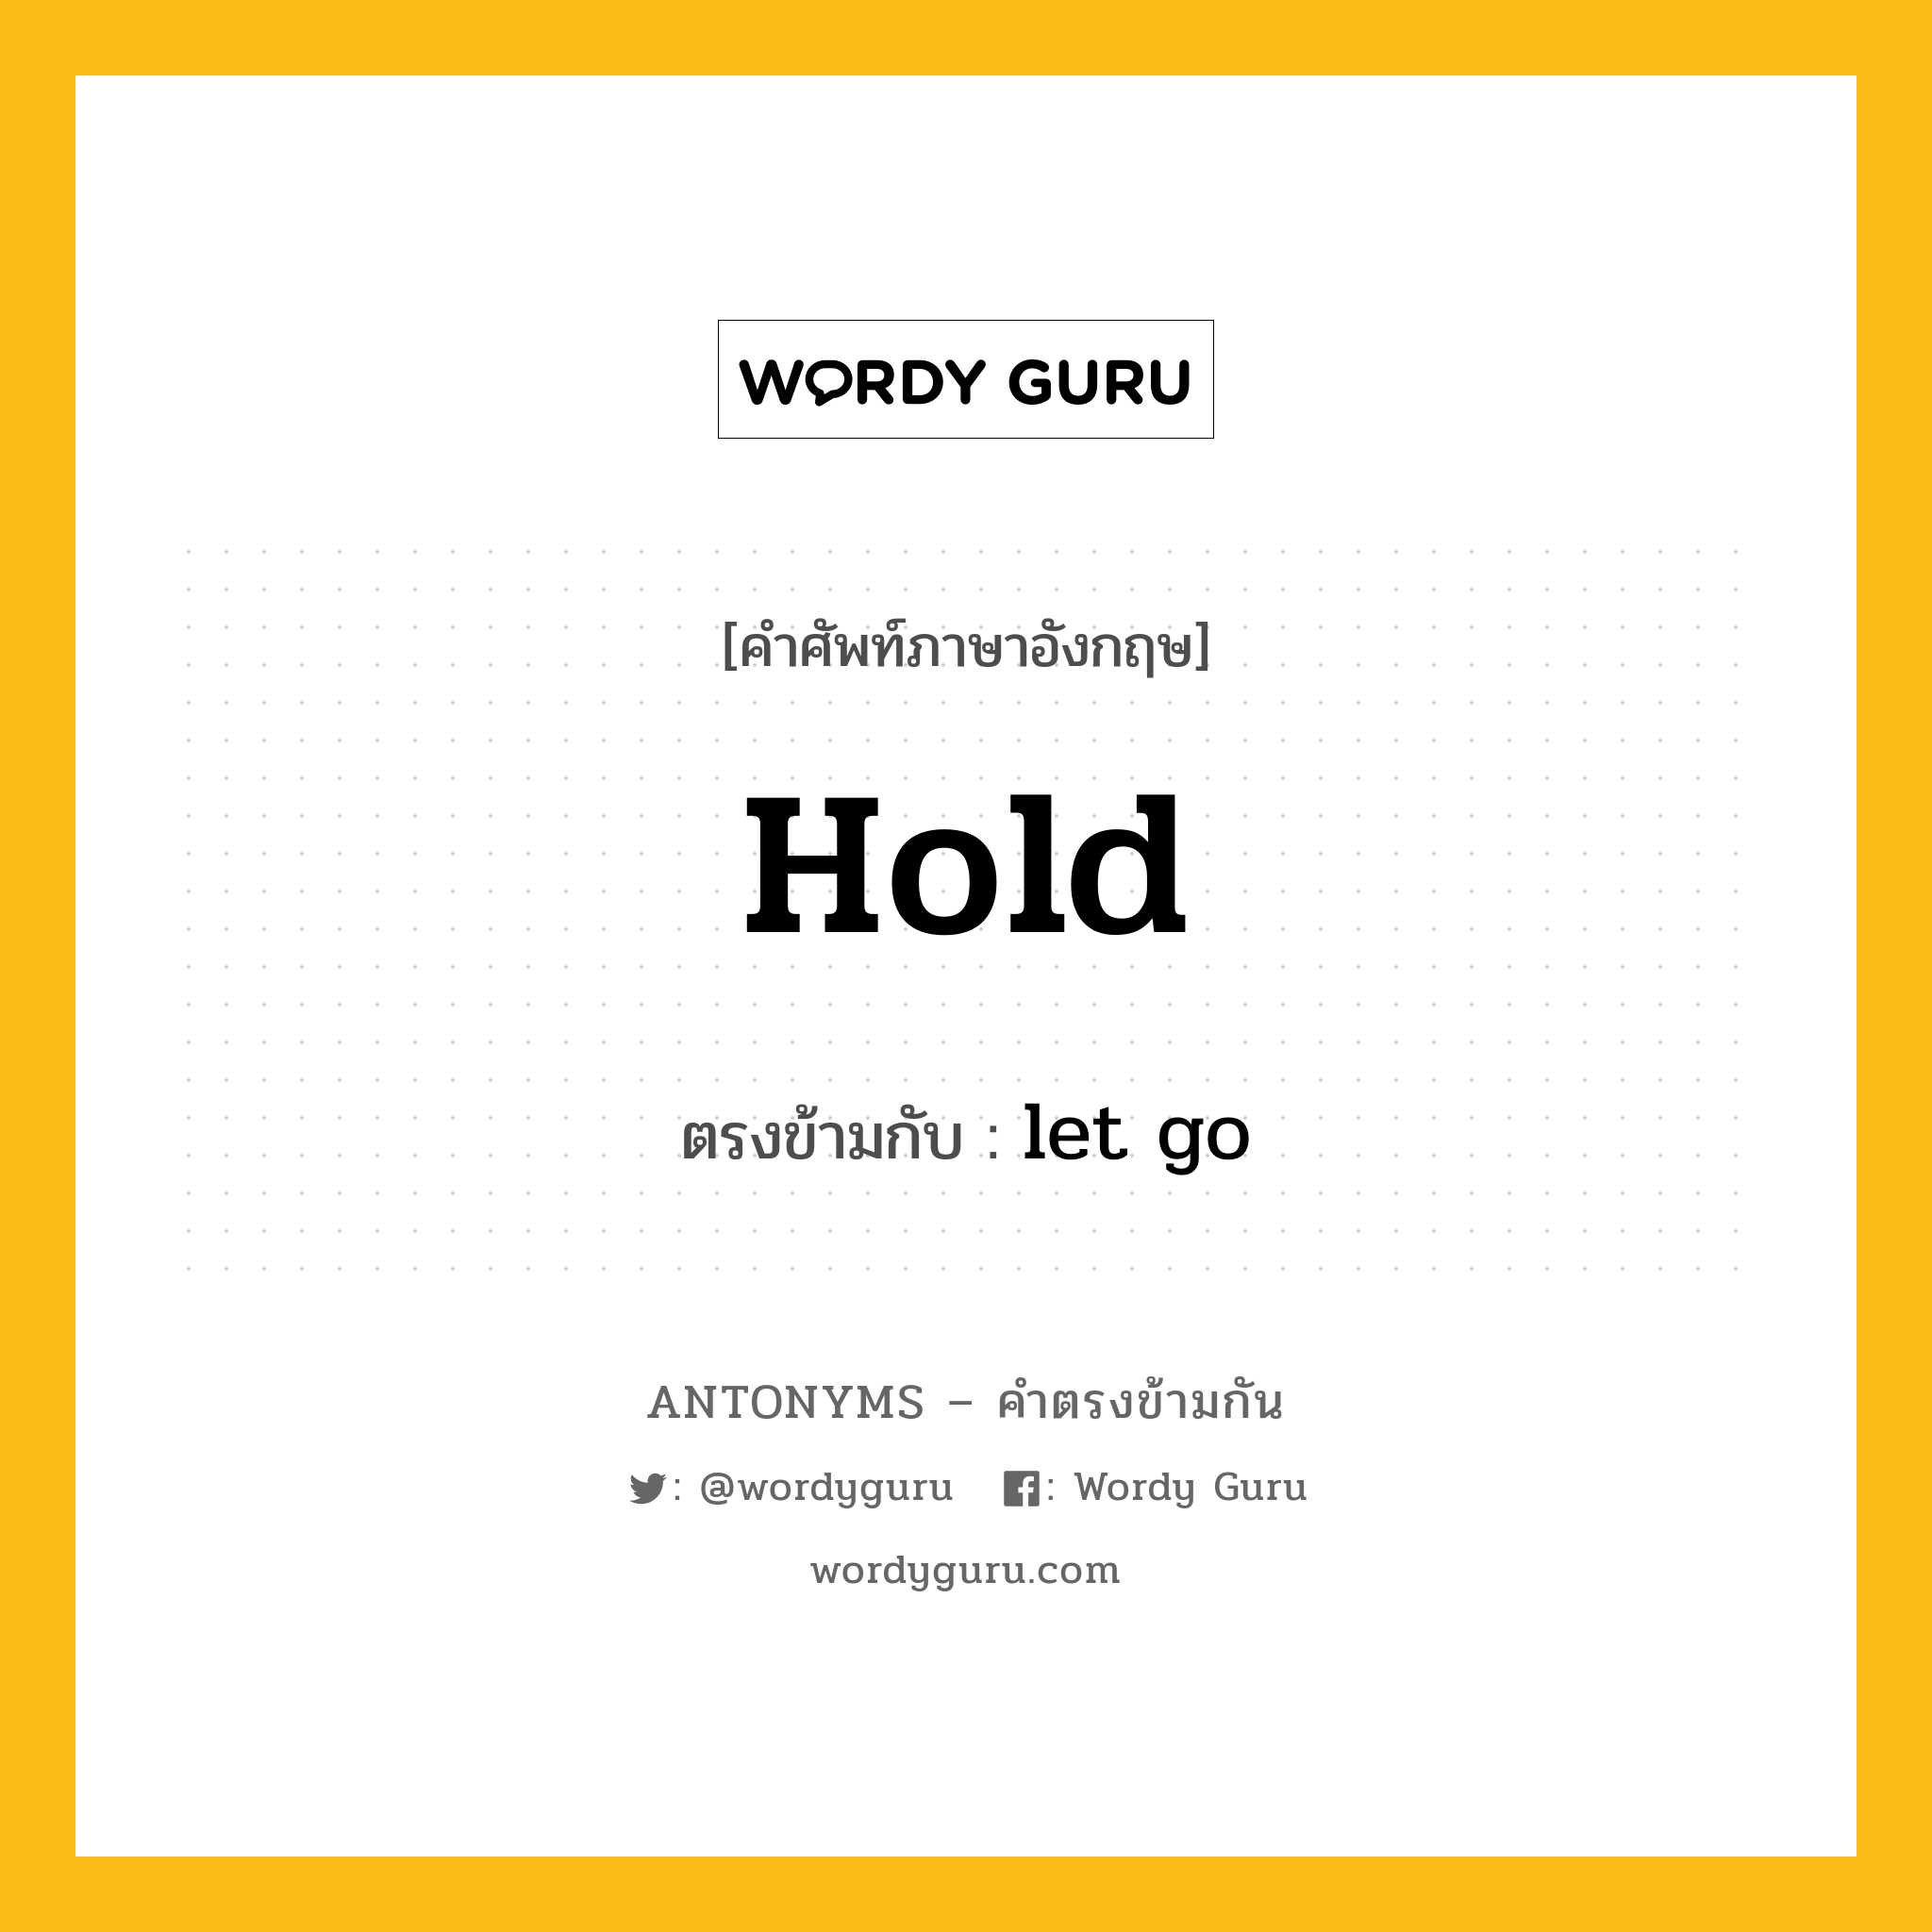 hold เป็นคำตรงข้ามกับคำไหนบ้าง?, คำศัพท์ภาษาอังกฤษ hold ตรงข้ามกับ let go หมวด let go